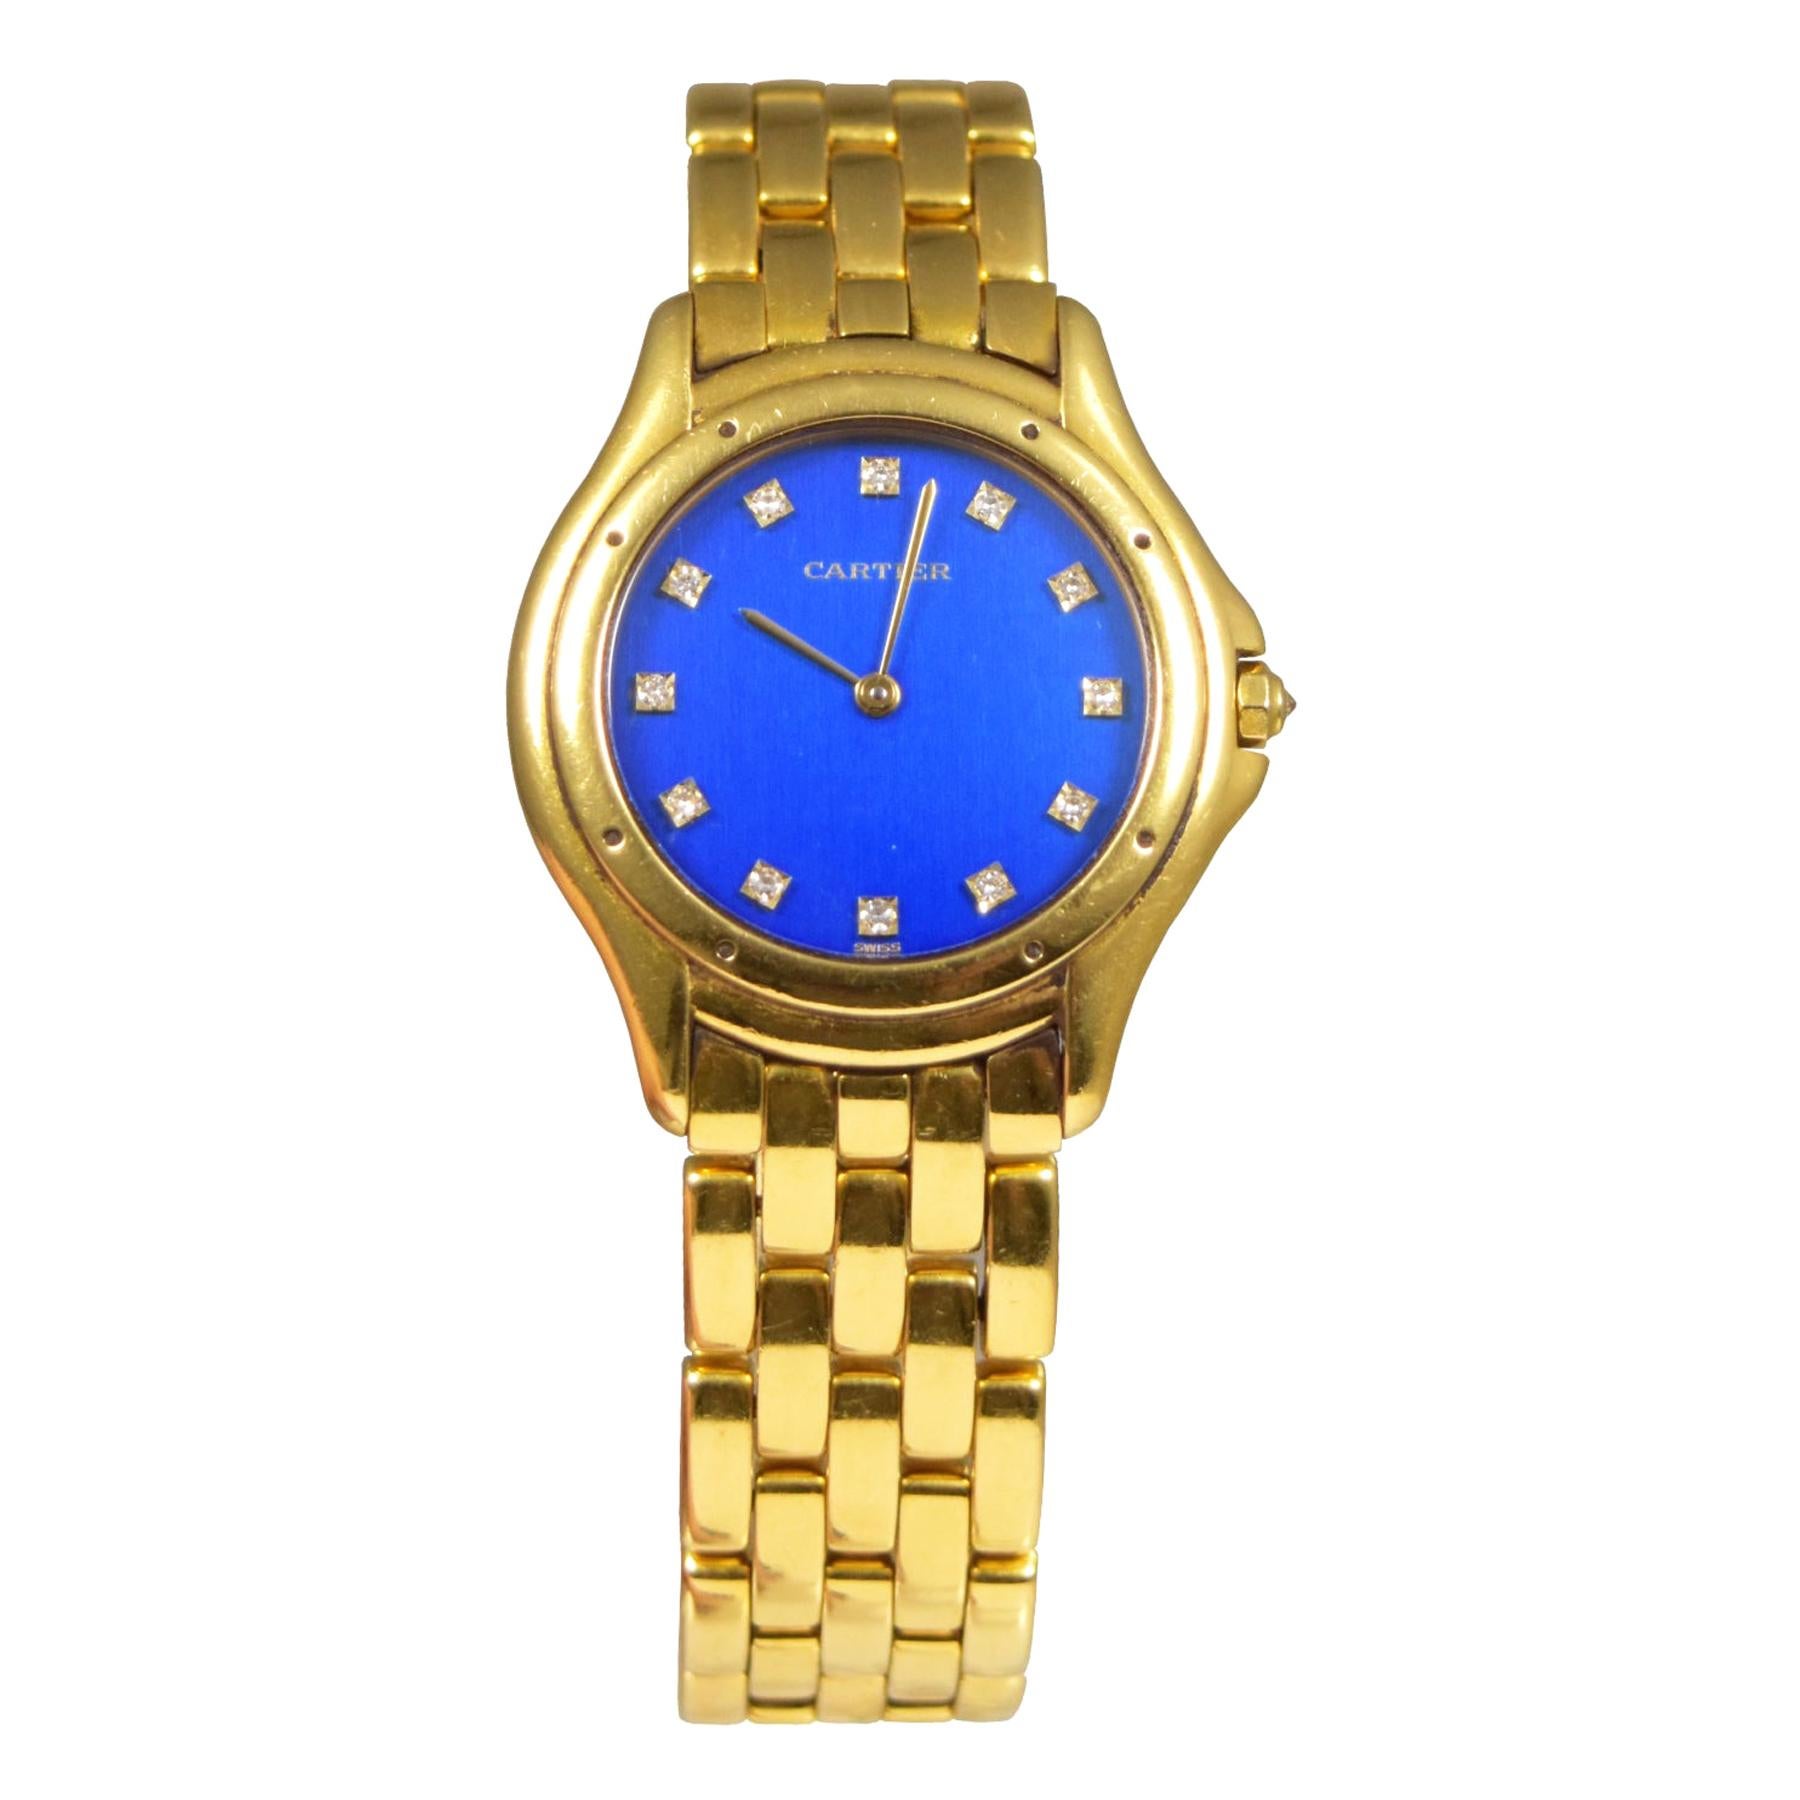 Splendid Cartier Cougar 18k Yellow Gold Blue Diamond Dial Watch